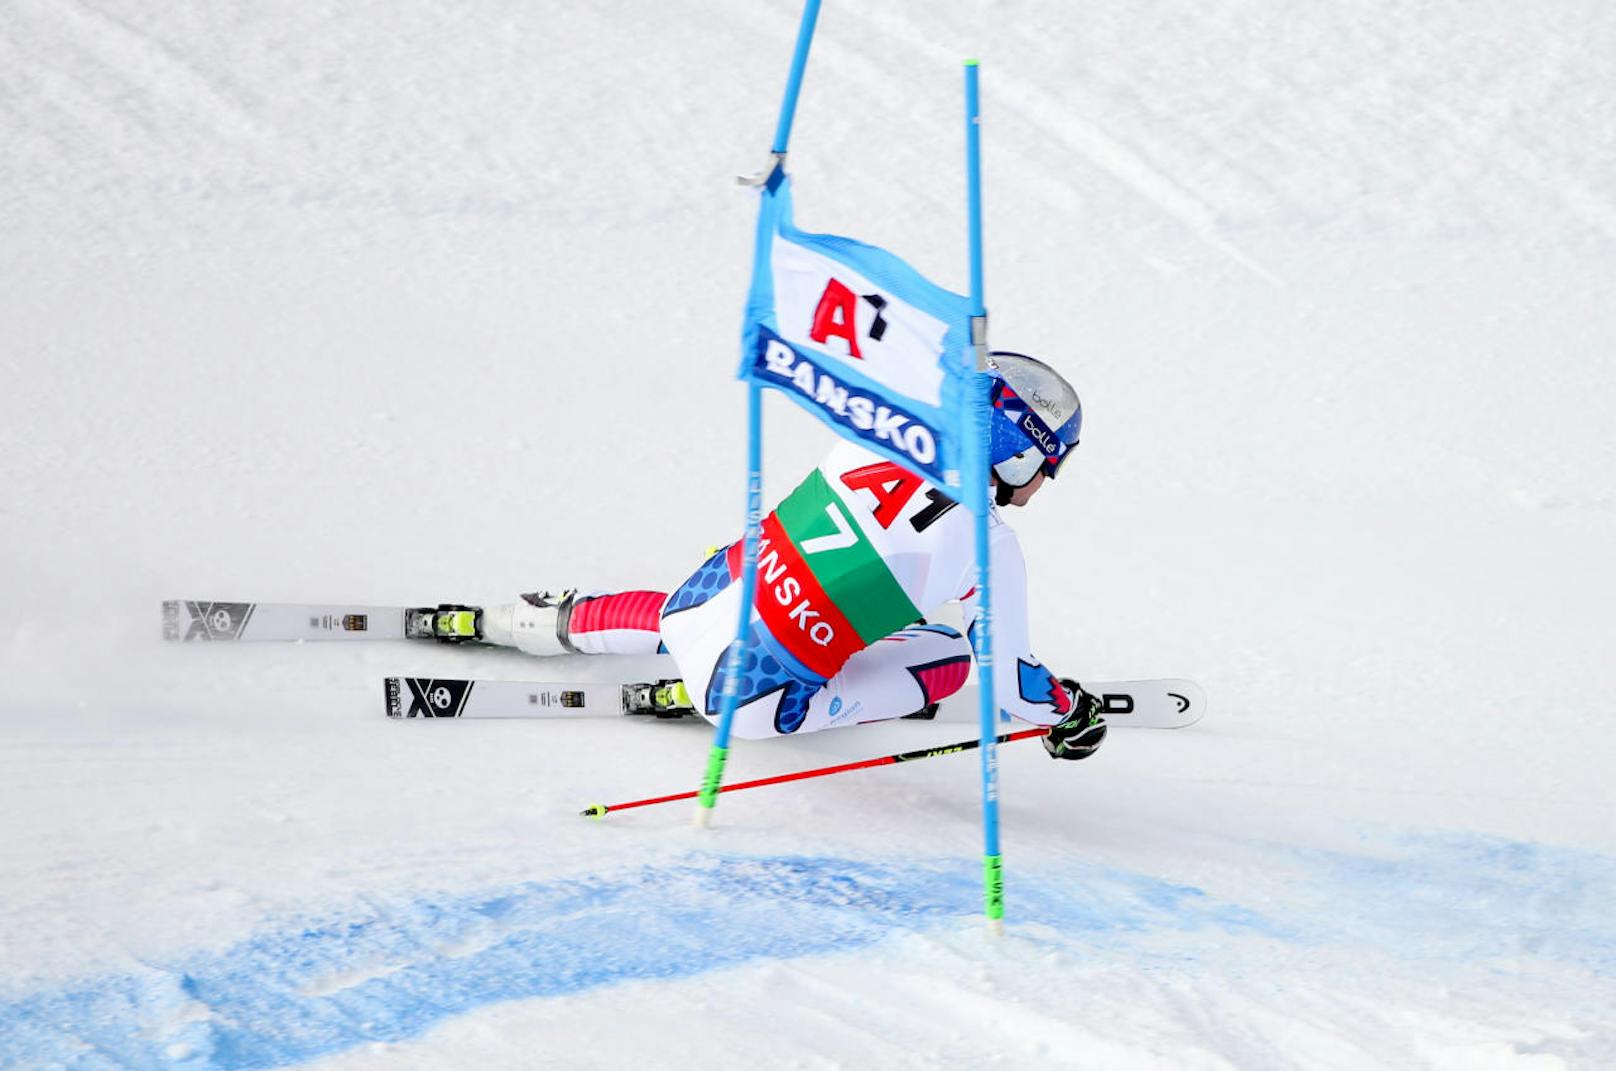 Der Ski-Tross übersiedelte nach Bulgarien. In Bansko stand die zweite von zwei Saison-Kombis am Programm. Der Sieg ging an Weltmeister Pinturault. 

<b><i>Bansko, Kombi (22.2.2019)</i></b><i>
1. Alexis Pinturault (Fr)
2. Marcel Hirscher
3. Stefan Hadalin (Slo)</i>